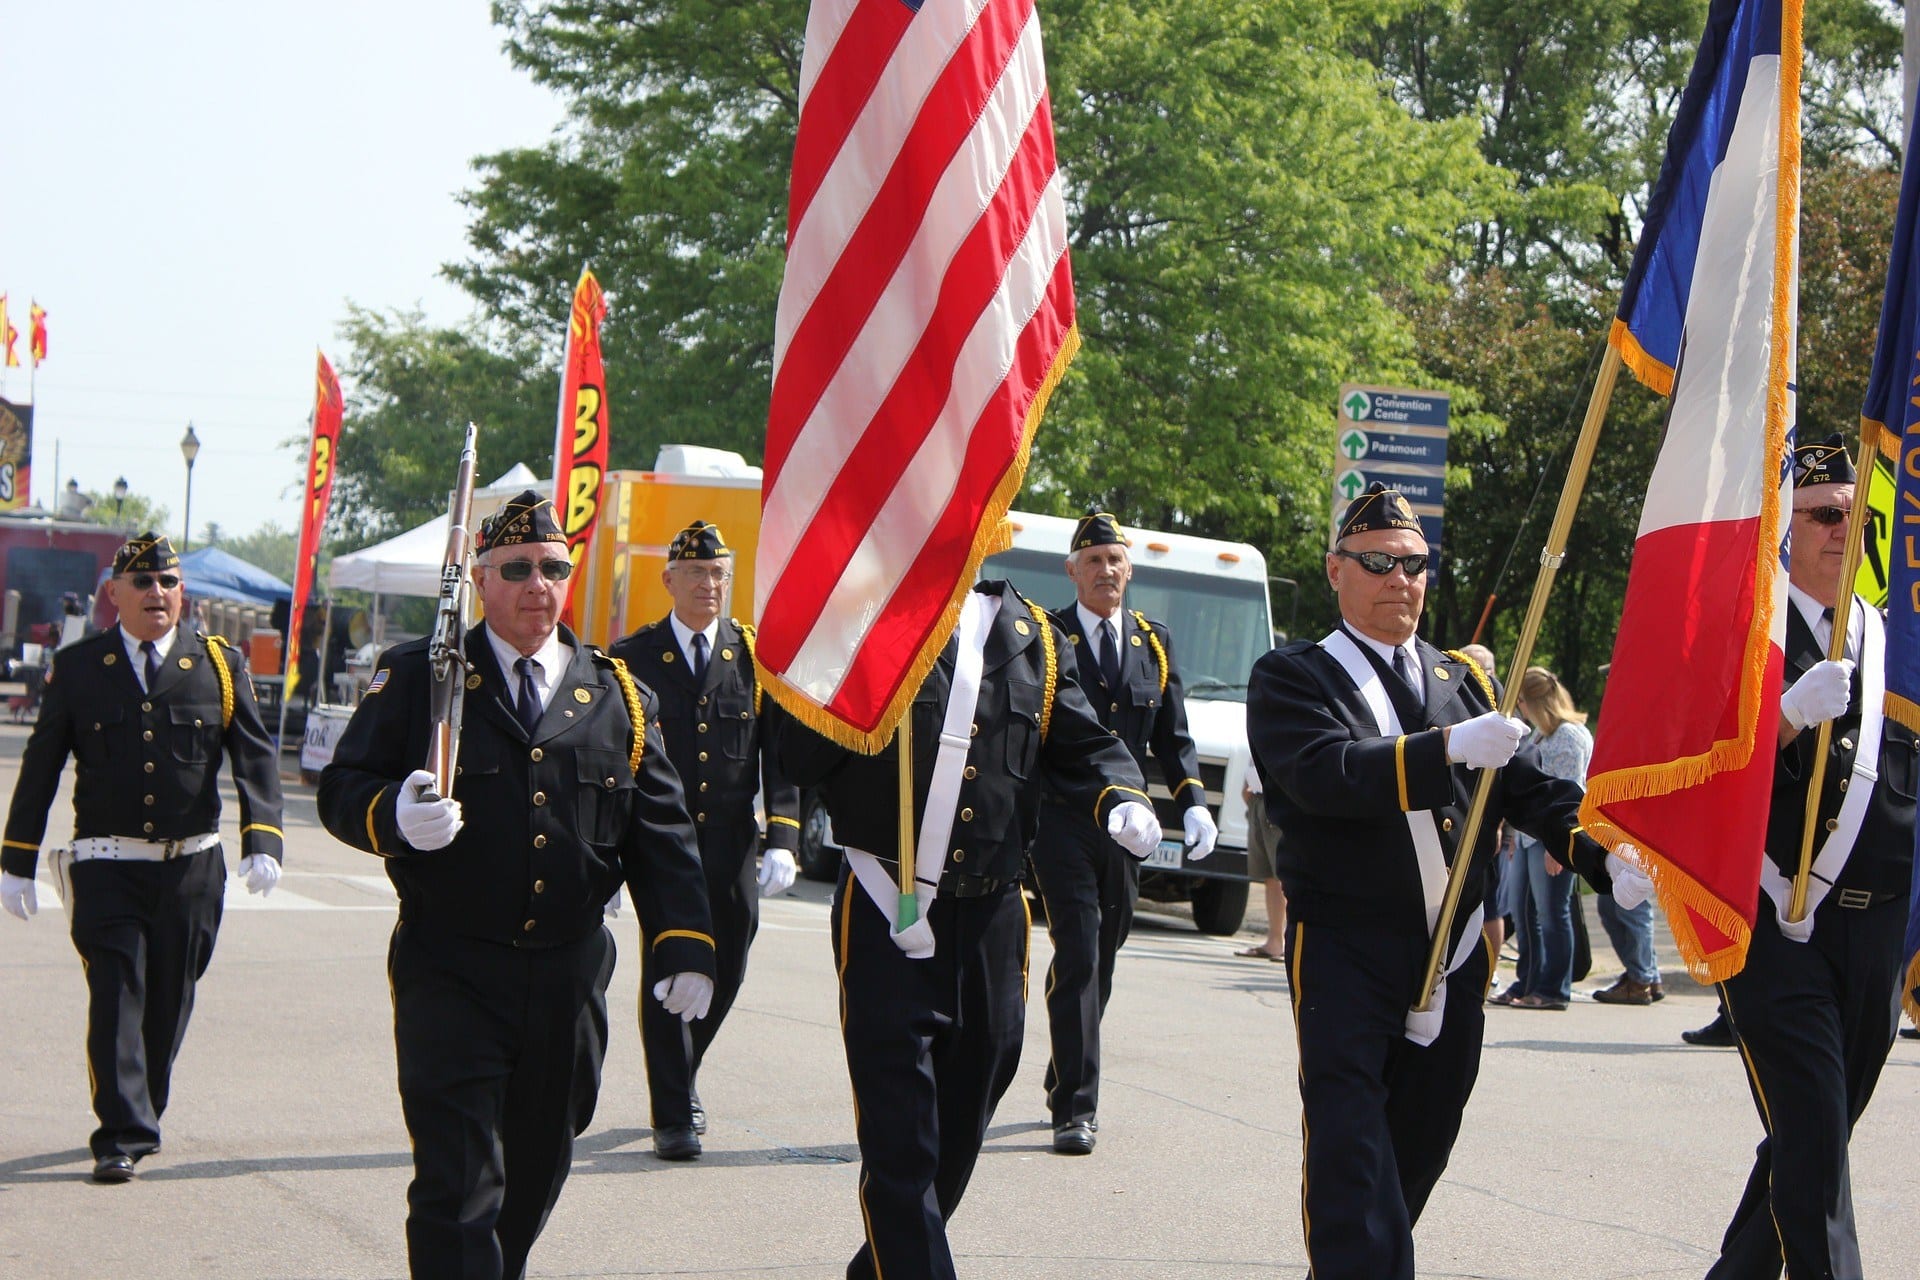 veterans at a parade